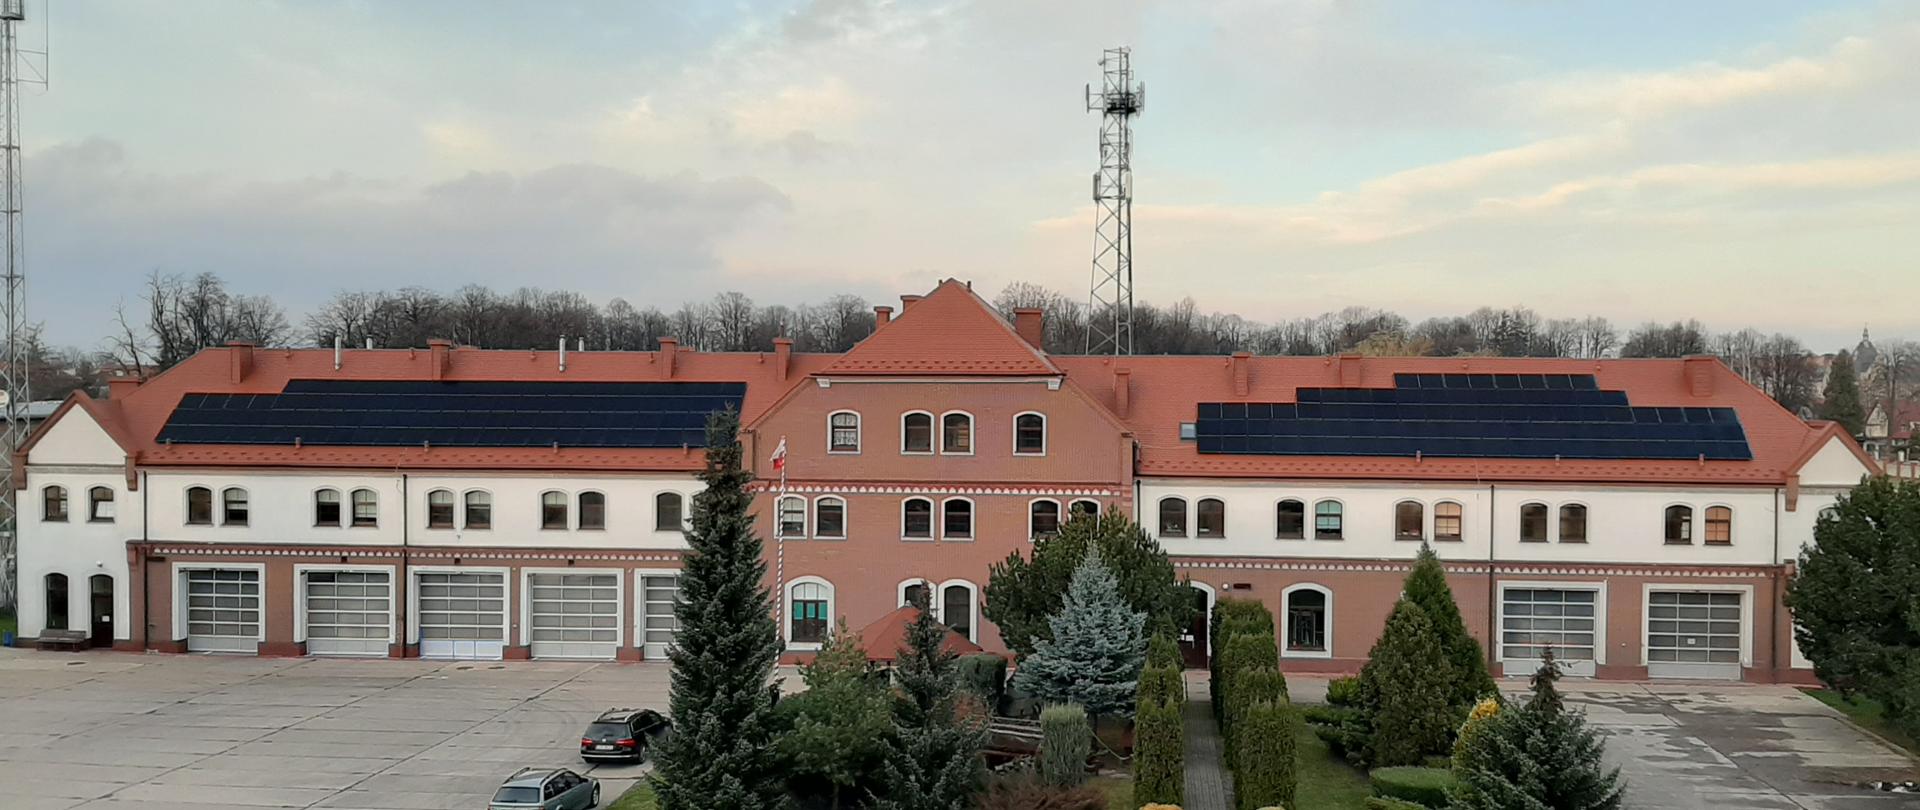 Zdjęcie panoramiczne przedstawiające budynek Komendy Powiatowej PSP w Prudniku, z wykonana instalacja fotowoltaiczną zamontowaną na dachu budynku.